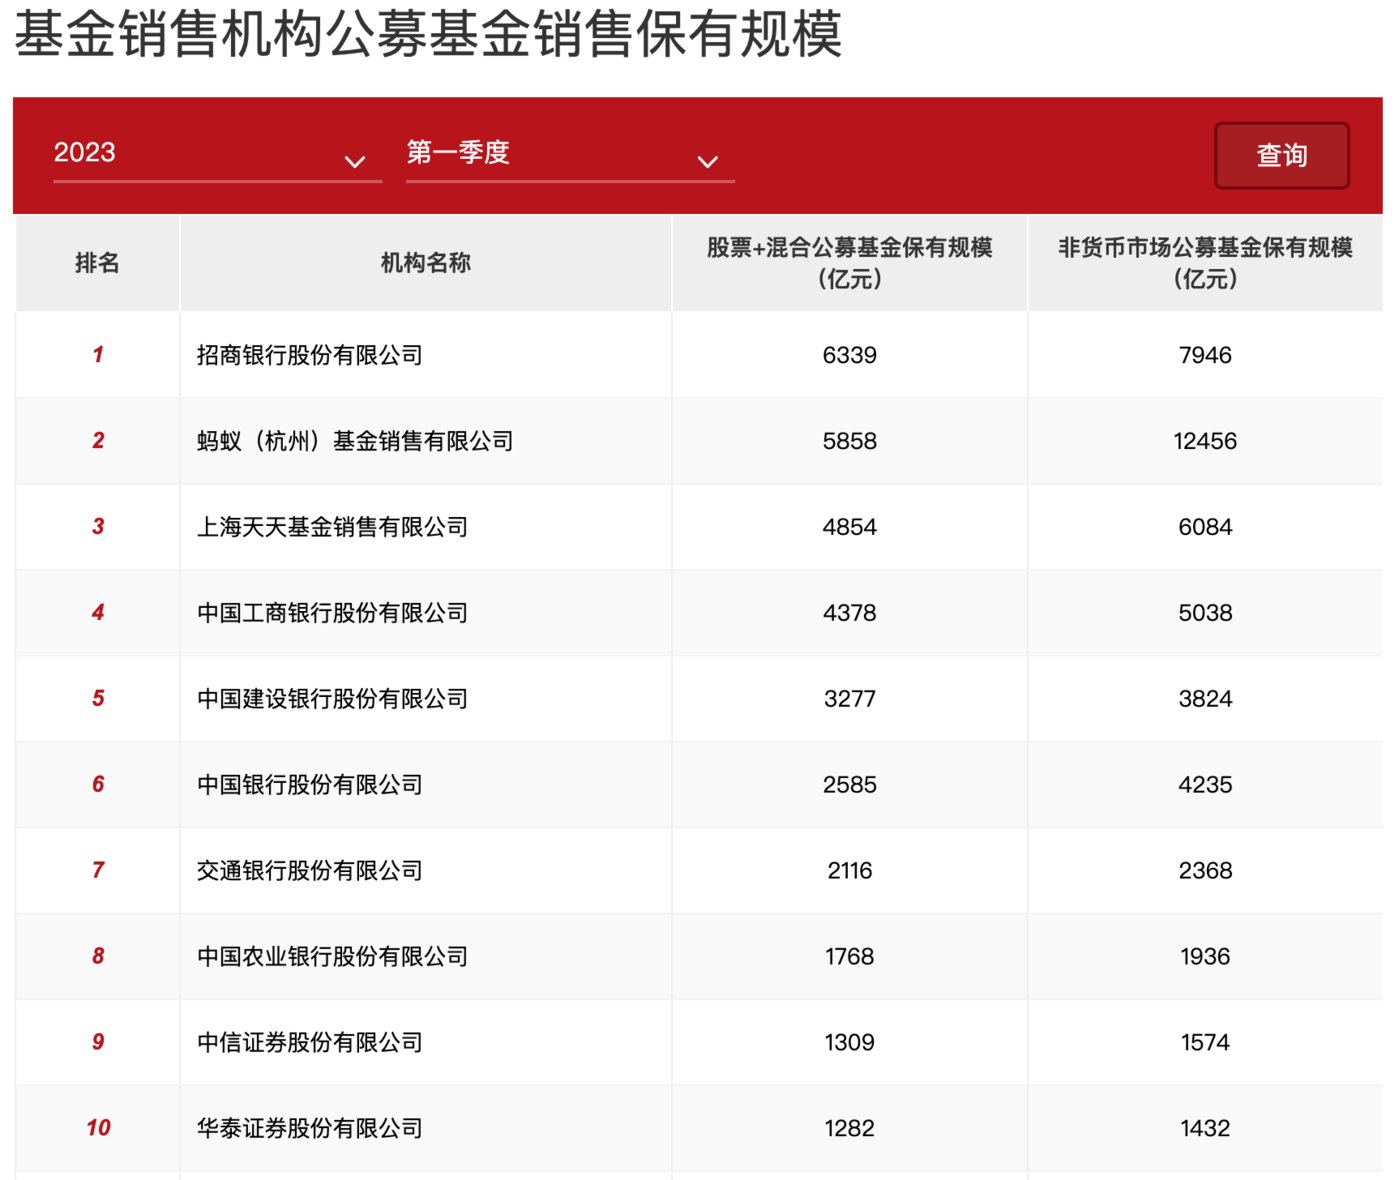 数据来源：中国证券投资基金业协会官网